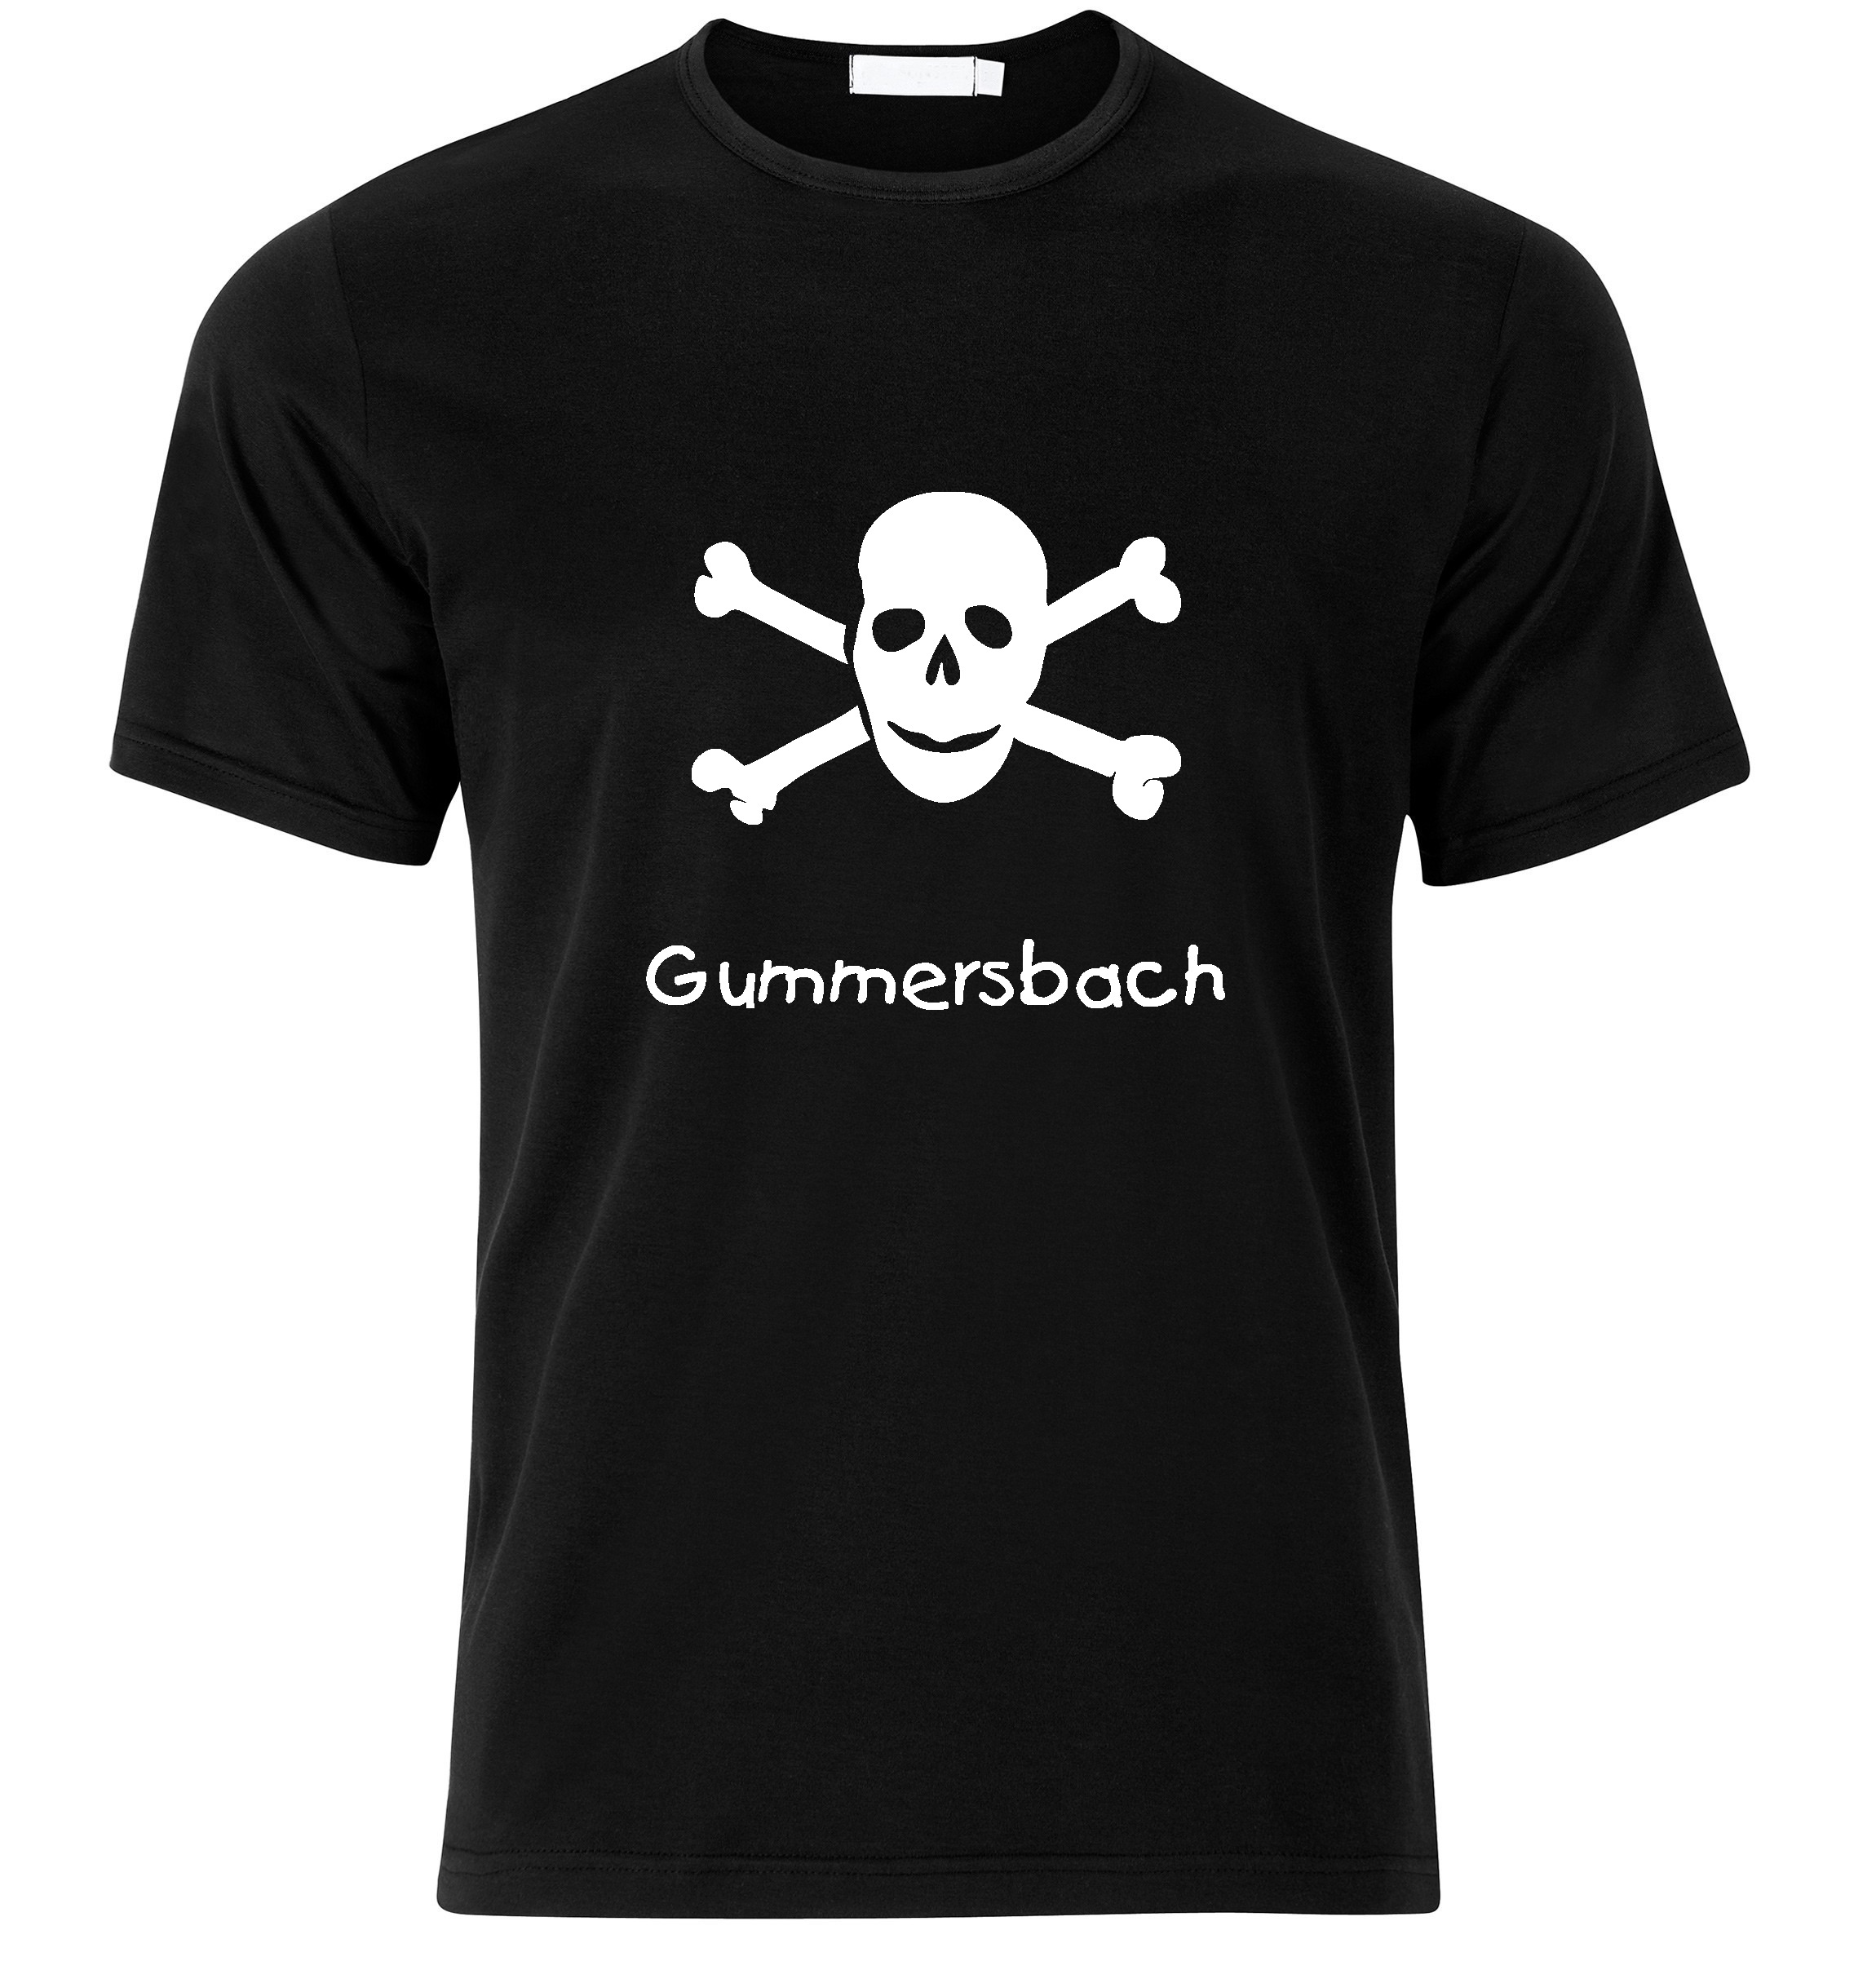 T-Shirt Gummersbach Jolly Roger, Totenkopf